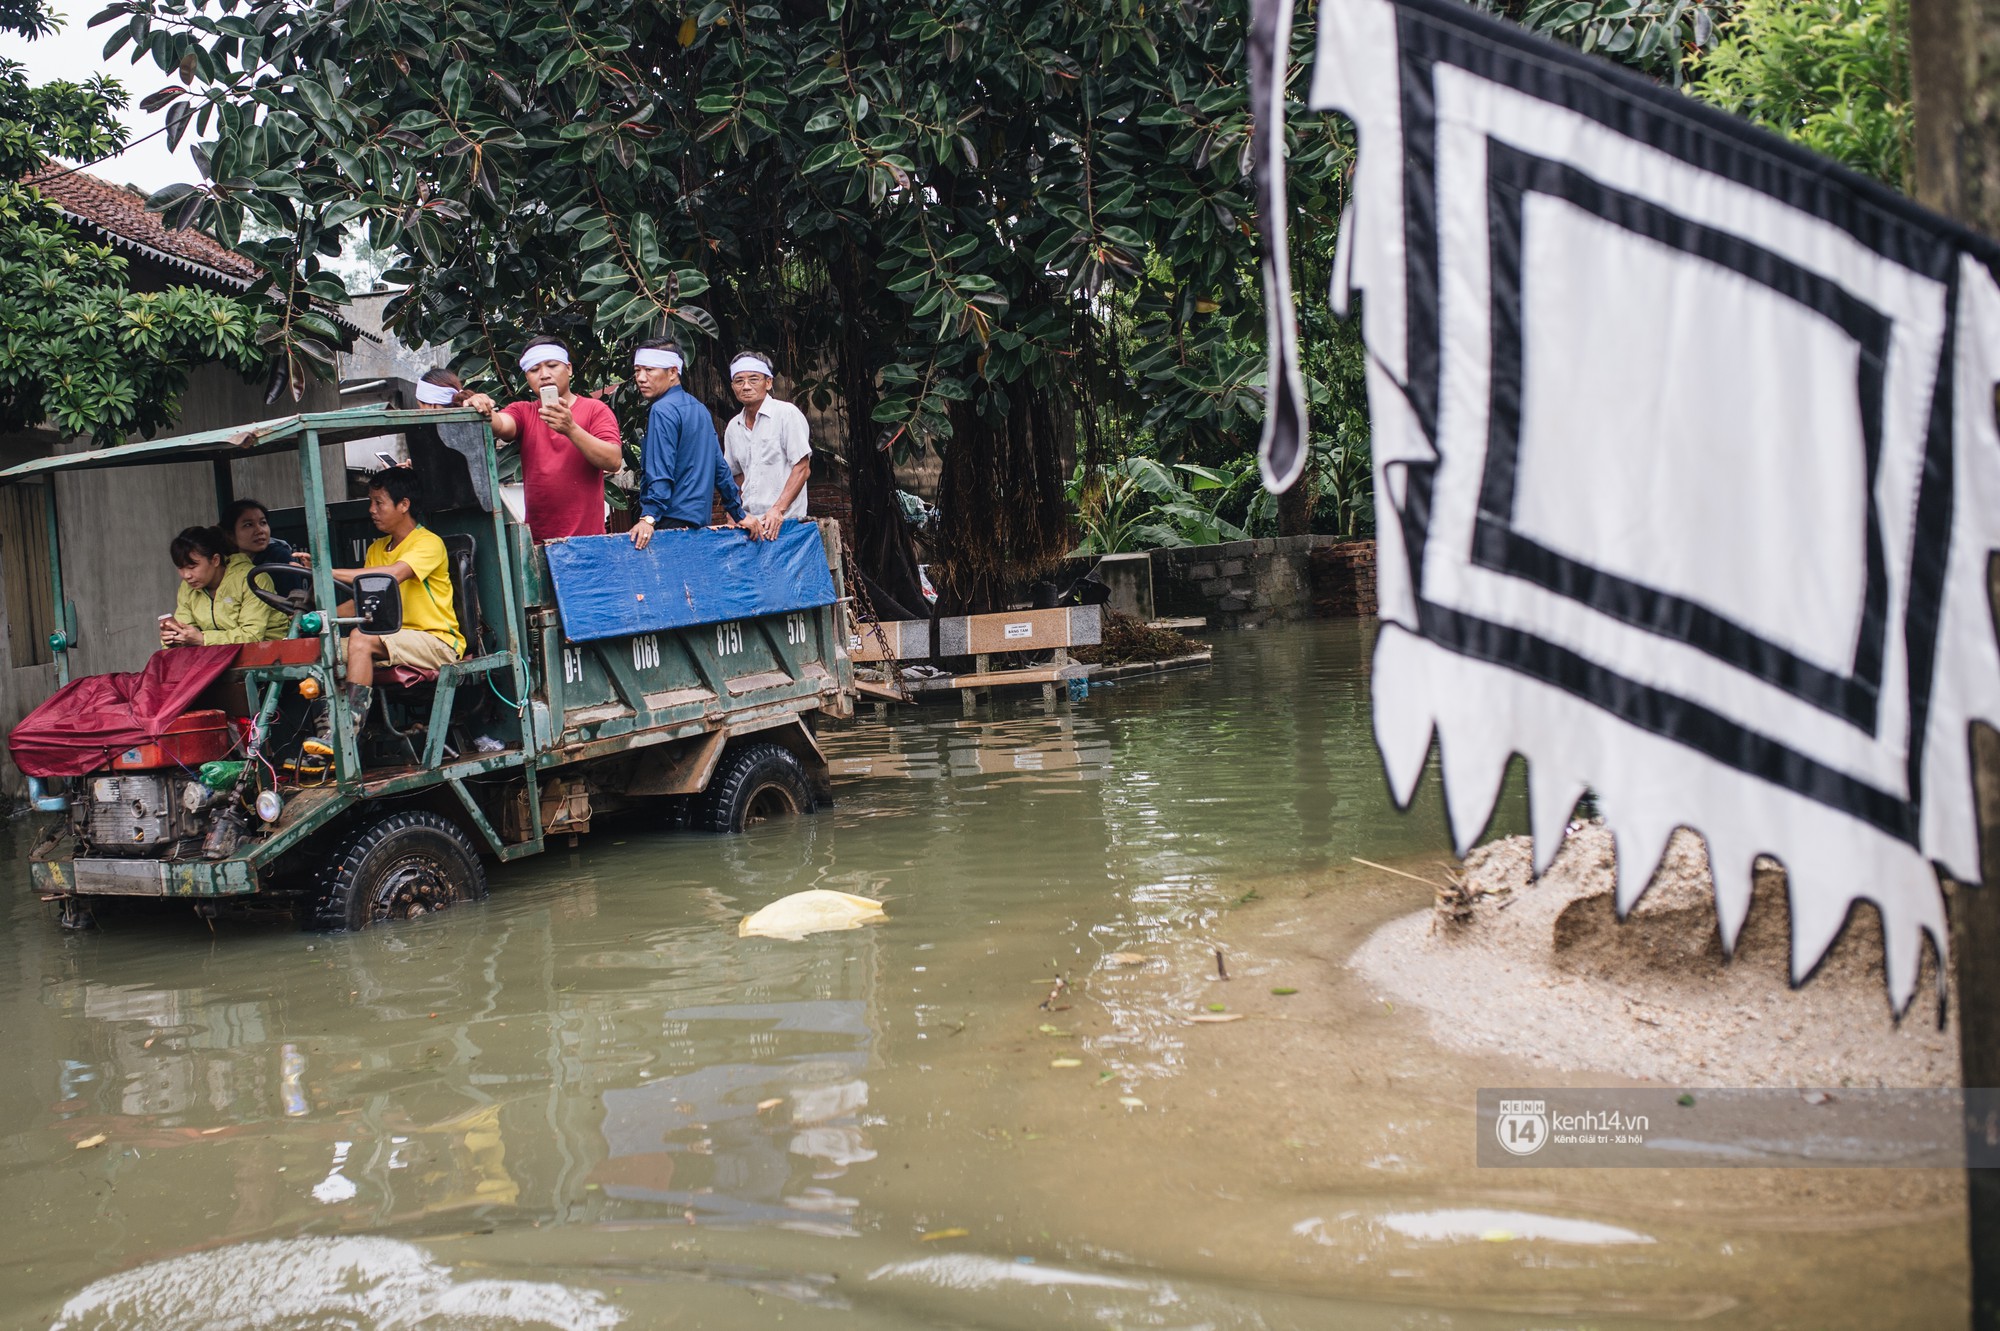 Chùm ảnh: 1 tuần sau lũ lớn, người dân Hà Nội vẫn phải chèo thuyền đi lại giữa biển rác thải nổi lềnh bềnh - Ảnh 19.